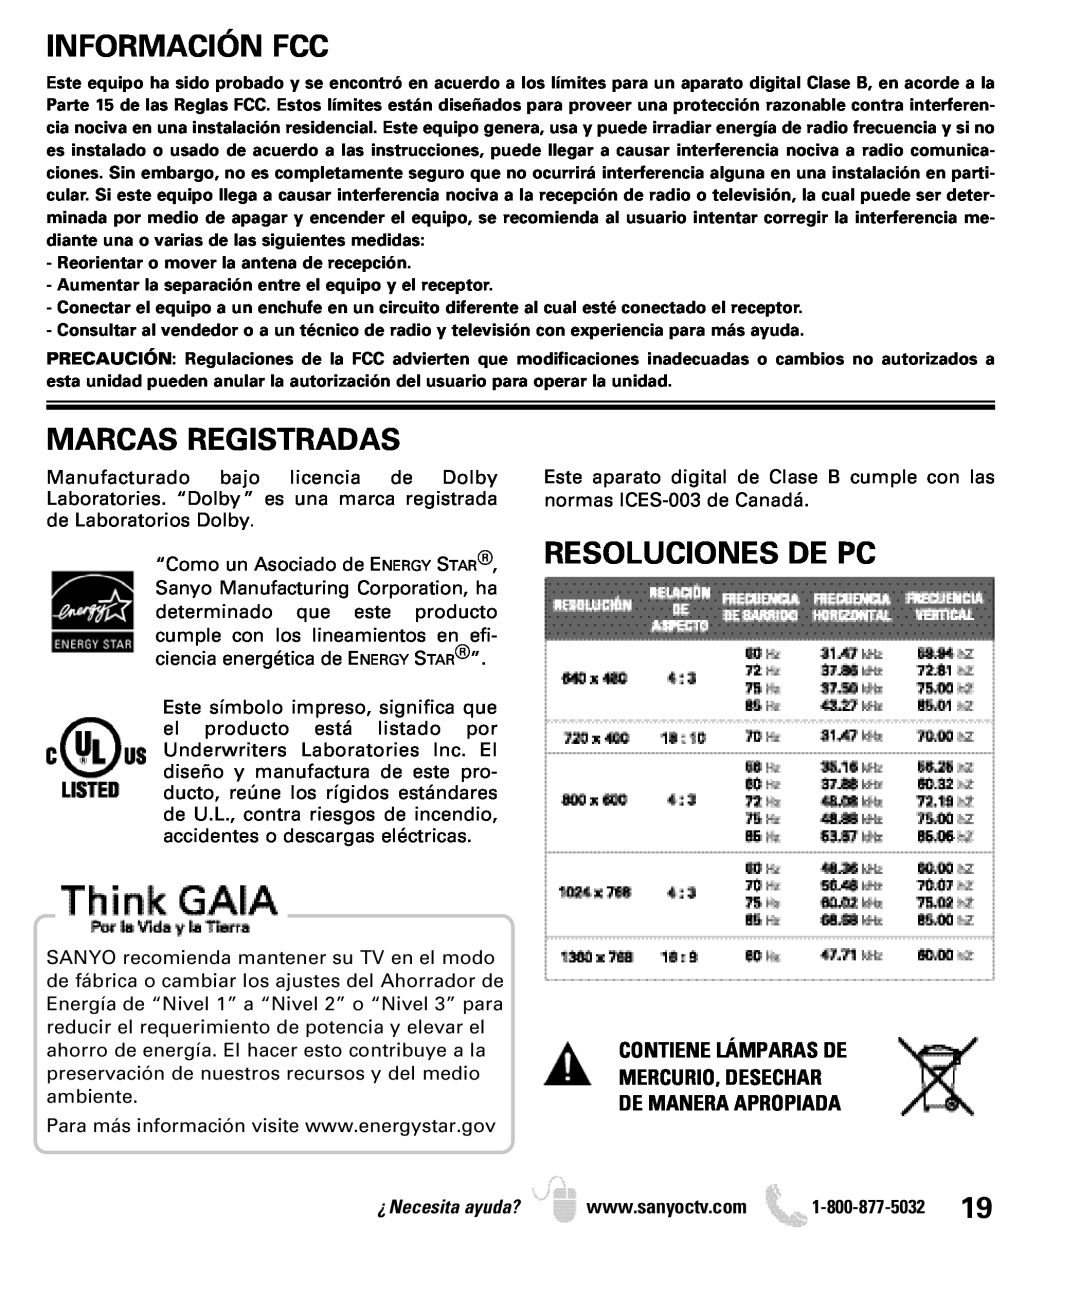 Sanyo DP19649, DP26649 owner manual Información Fcc, Marcas Registradas, Resoluciones De Pc, ¿Necesita ayuda? 